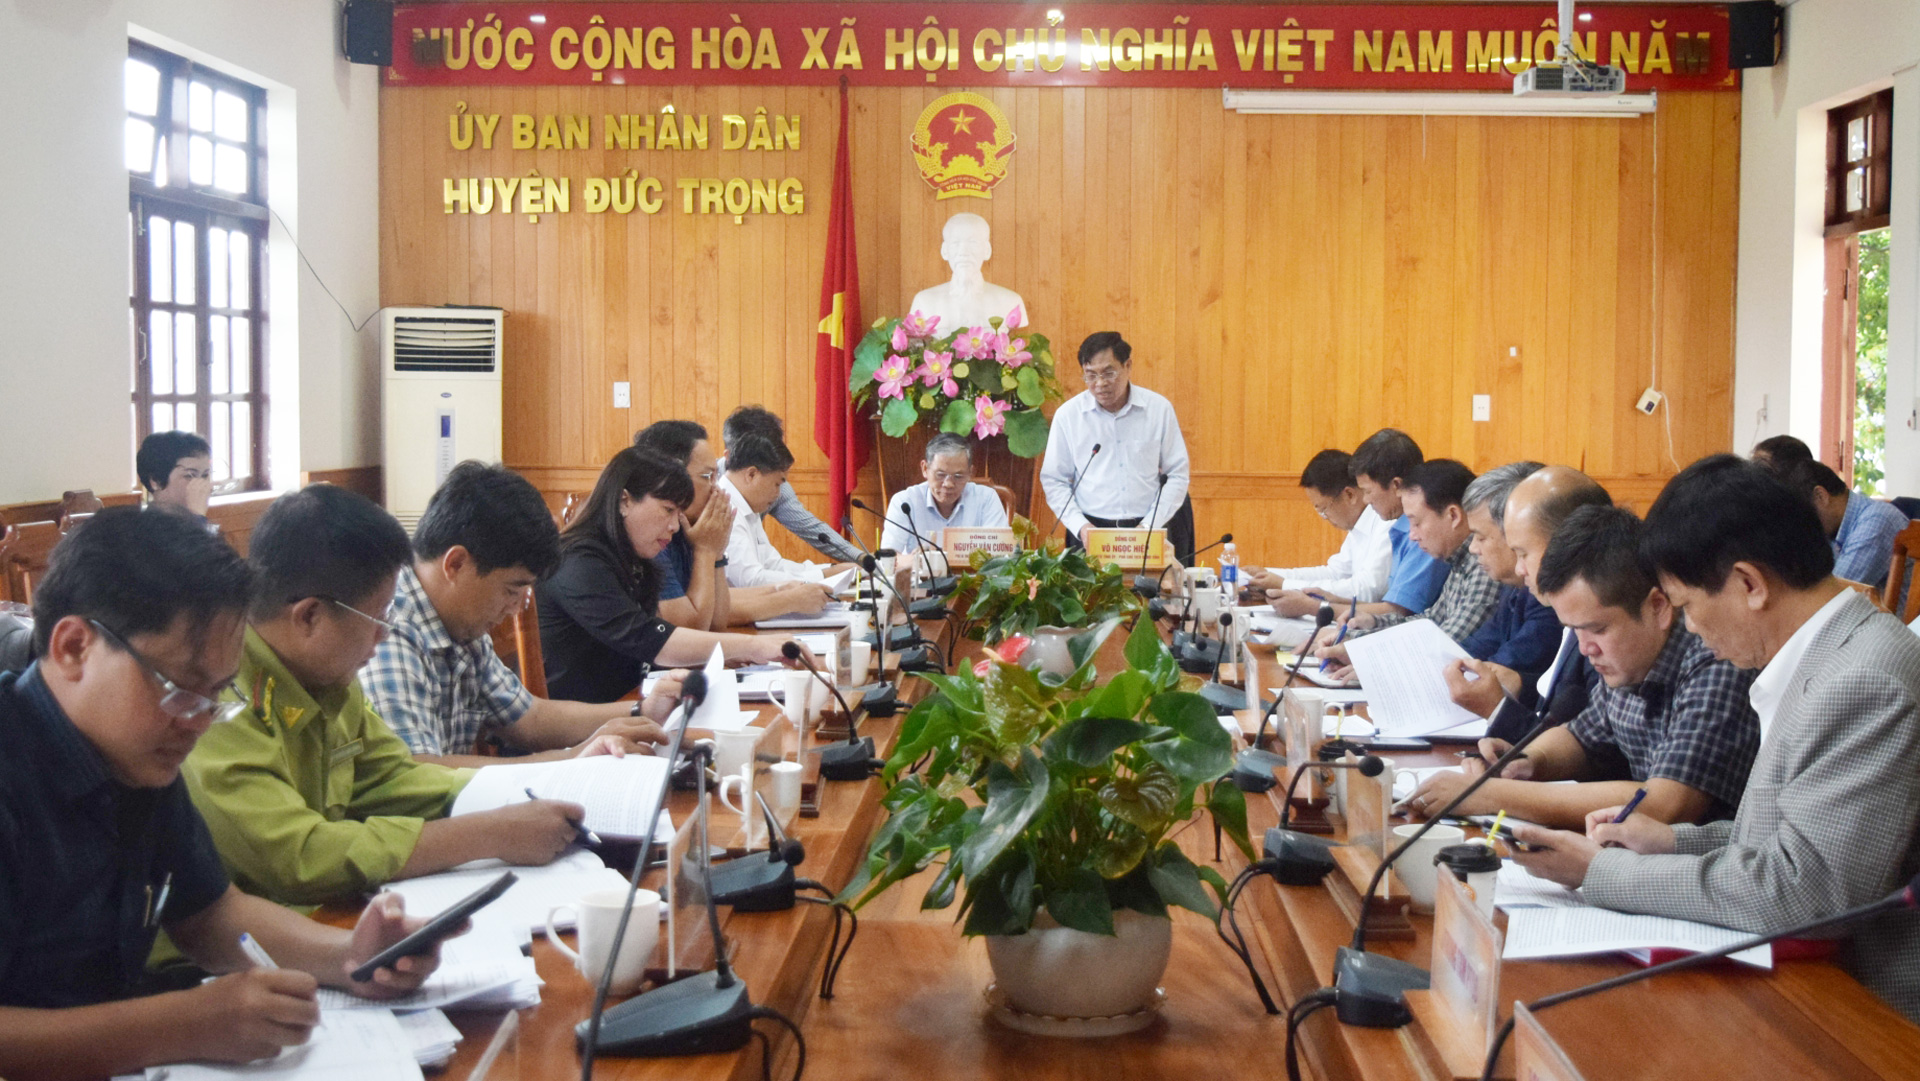 Phó Chủ tịch UBND tỉnh Võ Ngọc Hiệp làm việc với huyện Đức Trọng